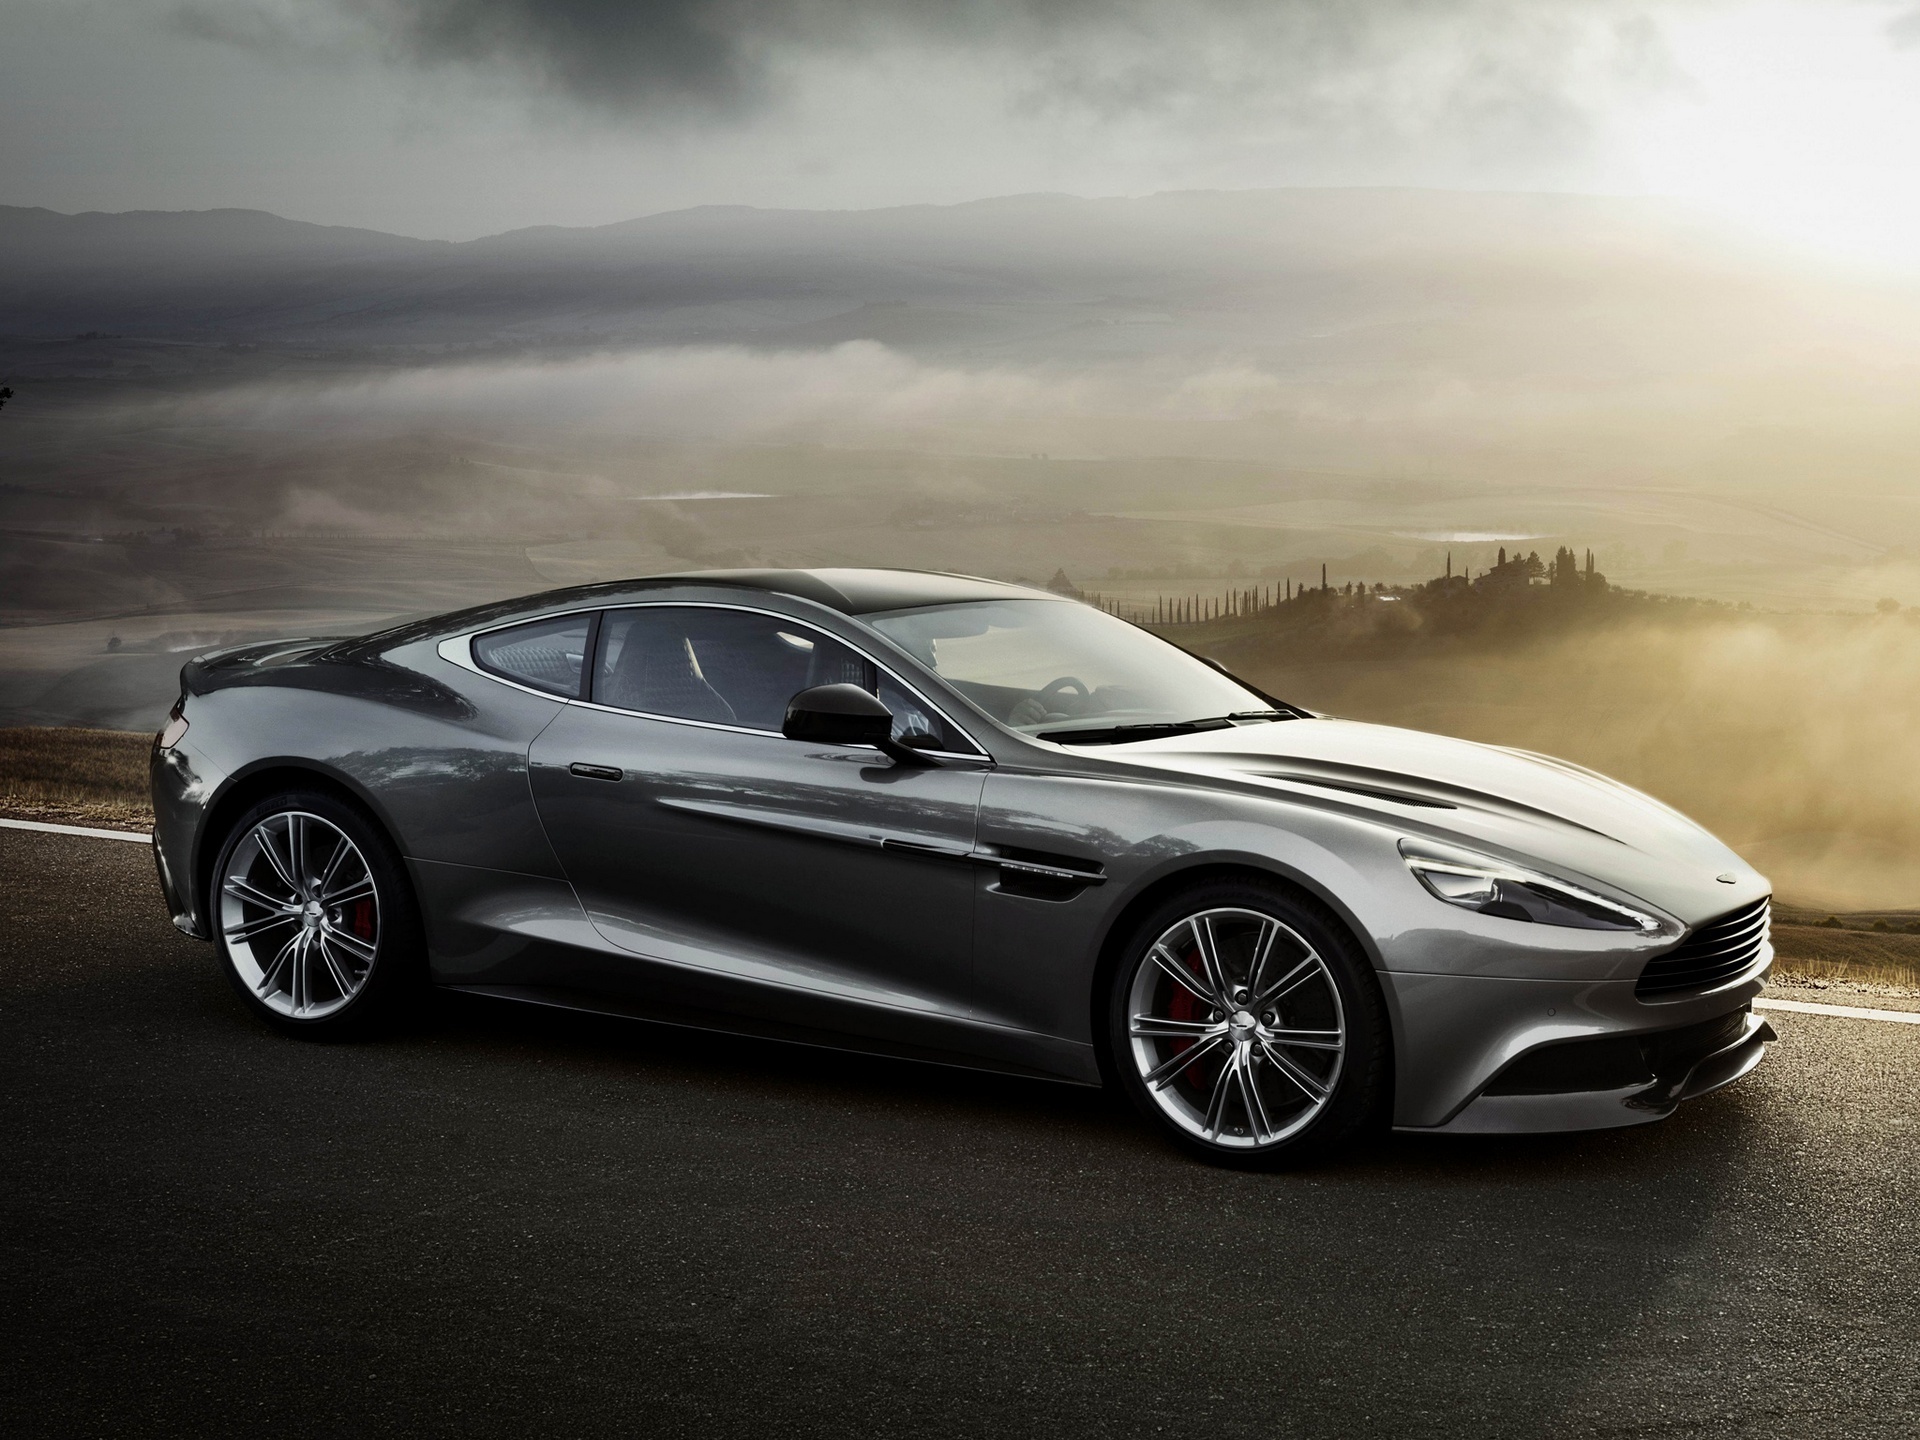 Best Aston Martin Vanquish Desktop Images